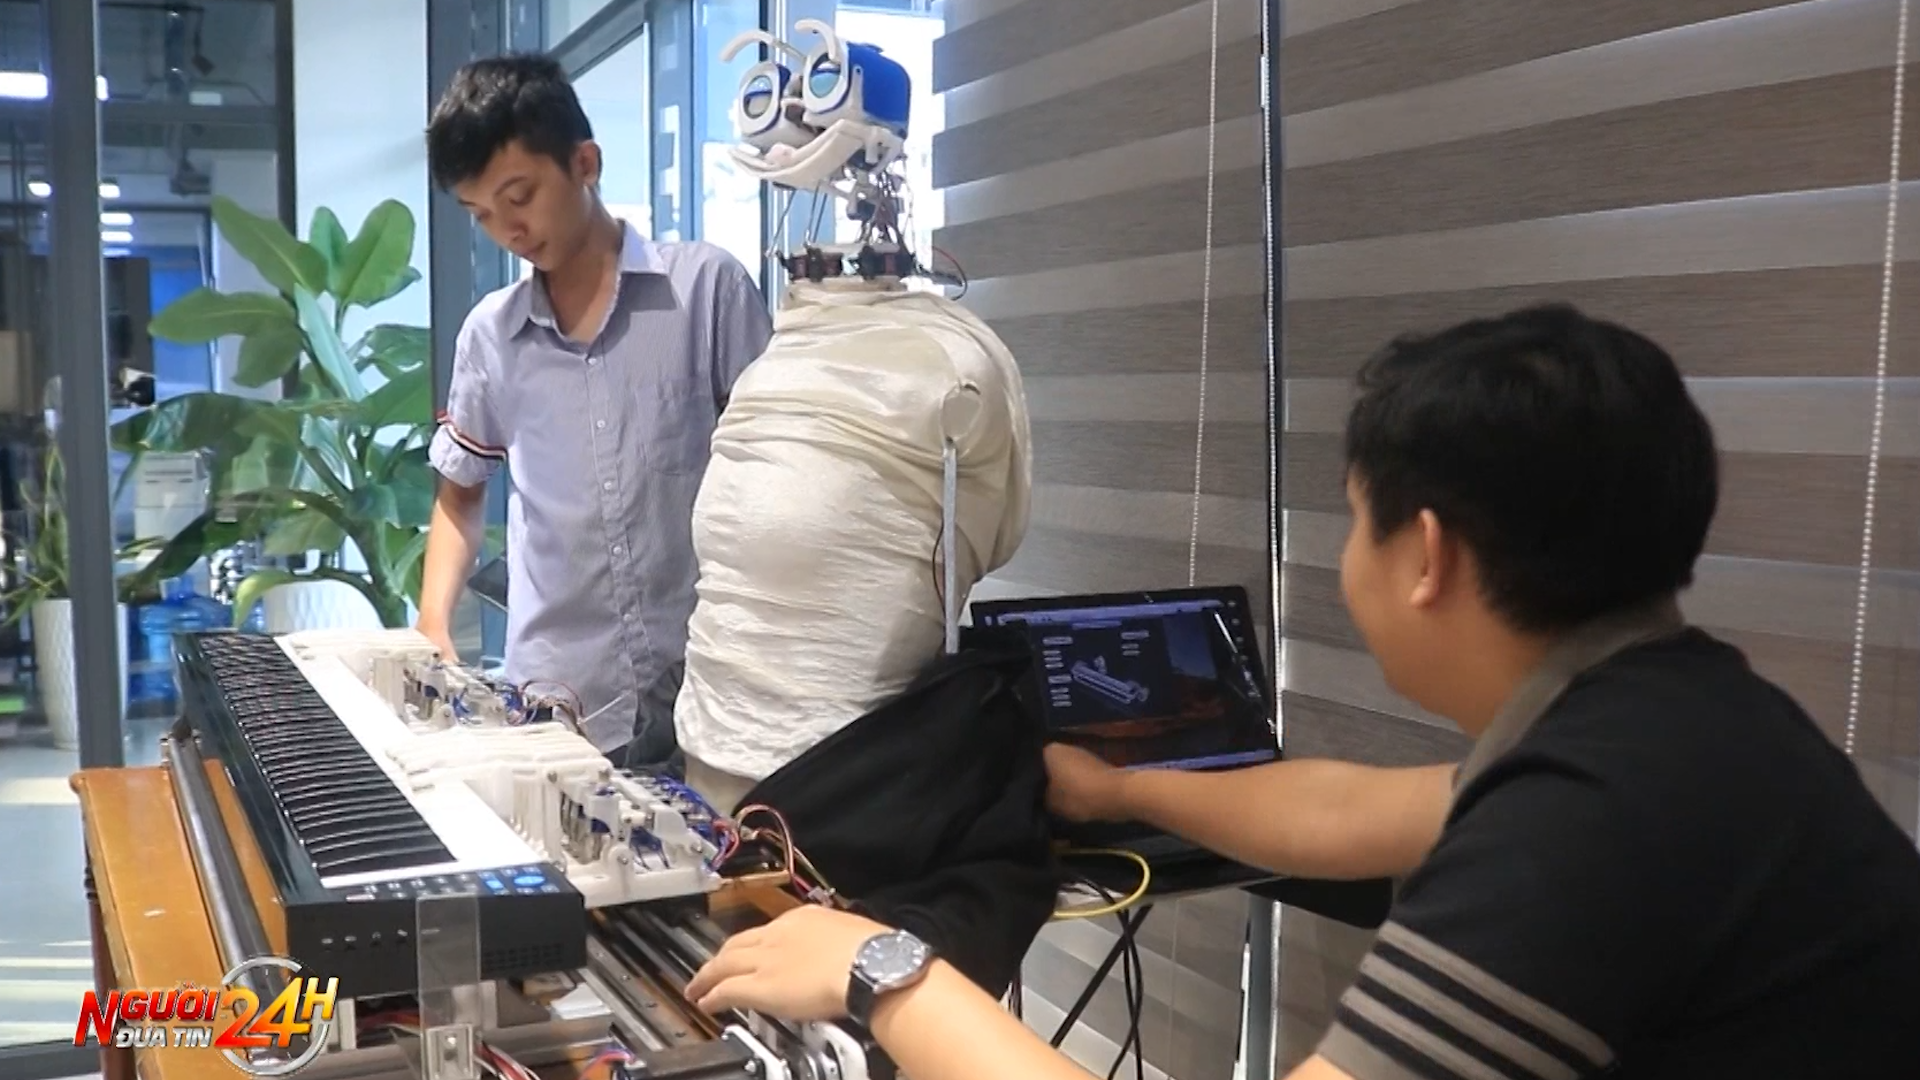 Nhóm sinh viên chế tạo robot chơi đàn piano